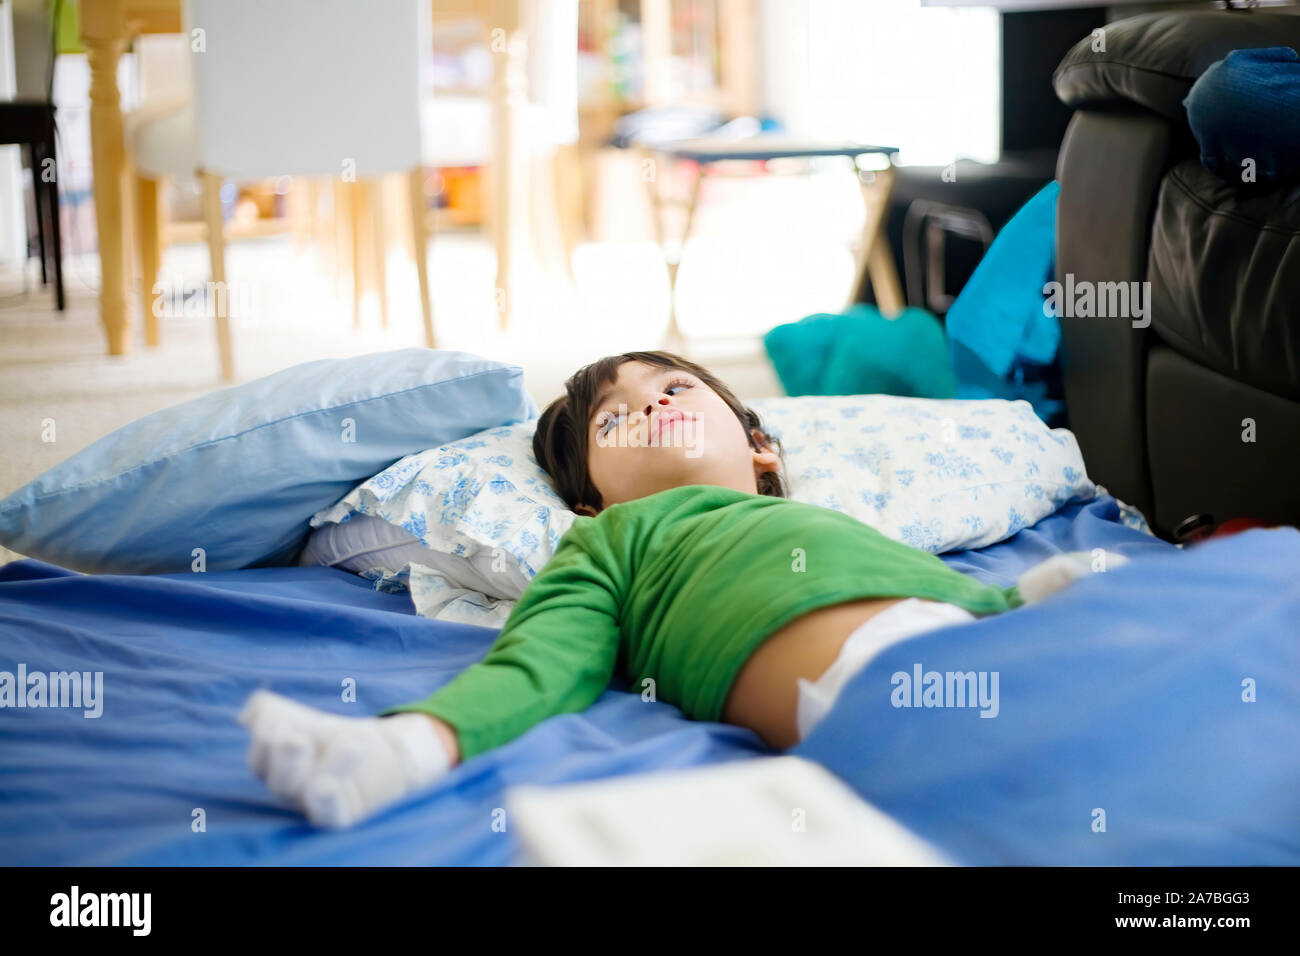 Les jeunes personnes handicapées garçon souffrant de paralysie cérébrale  allongé sur le tapis à la maison, porter des couches de détente Photo Stock  - Alamy